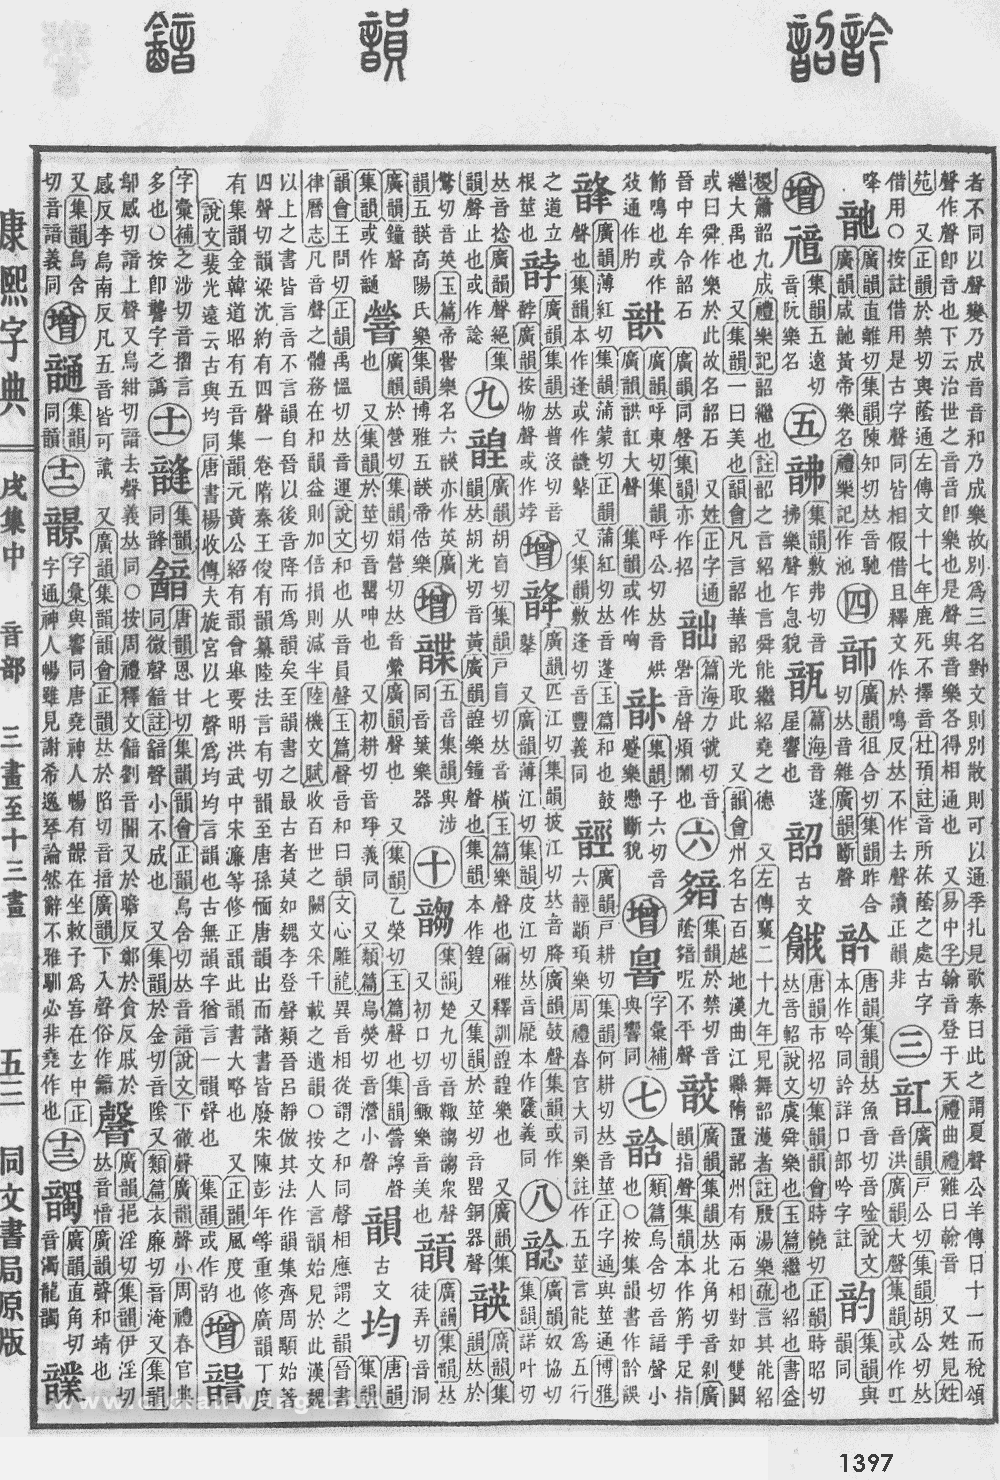 康熙字典掃描版第1397頁